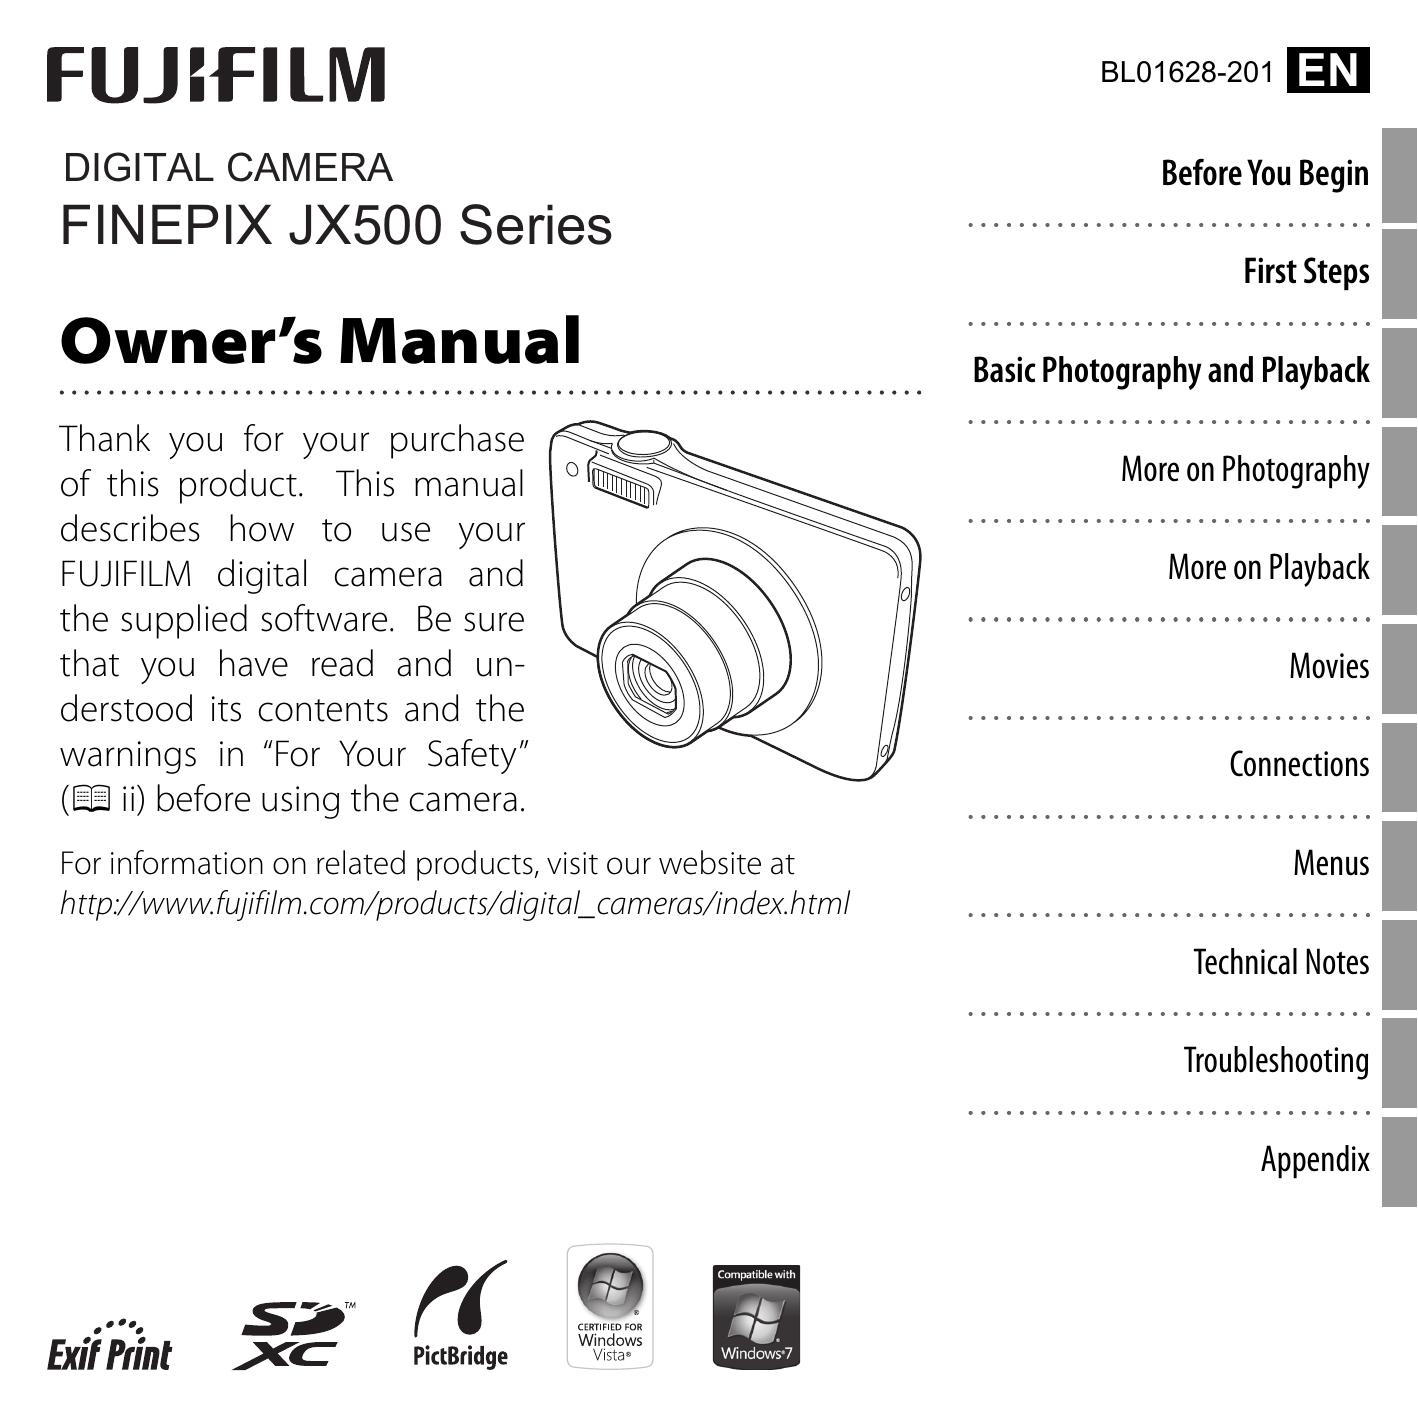 FujiFilm 16215102 Digital Camera User Manual